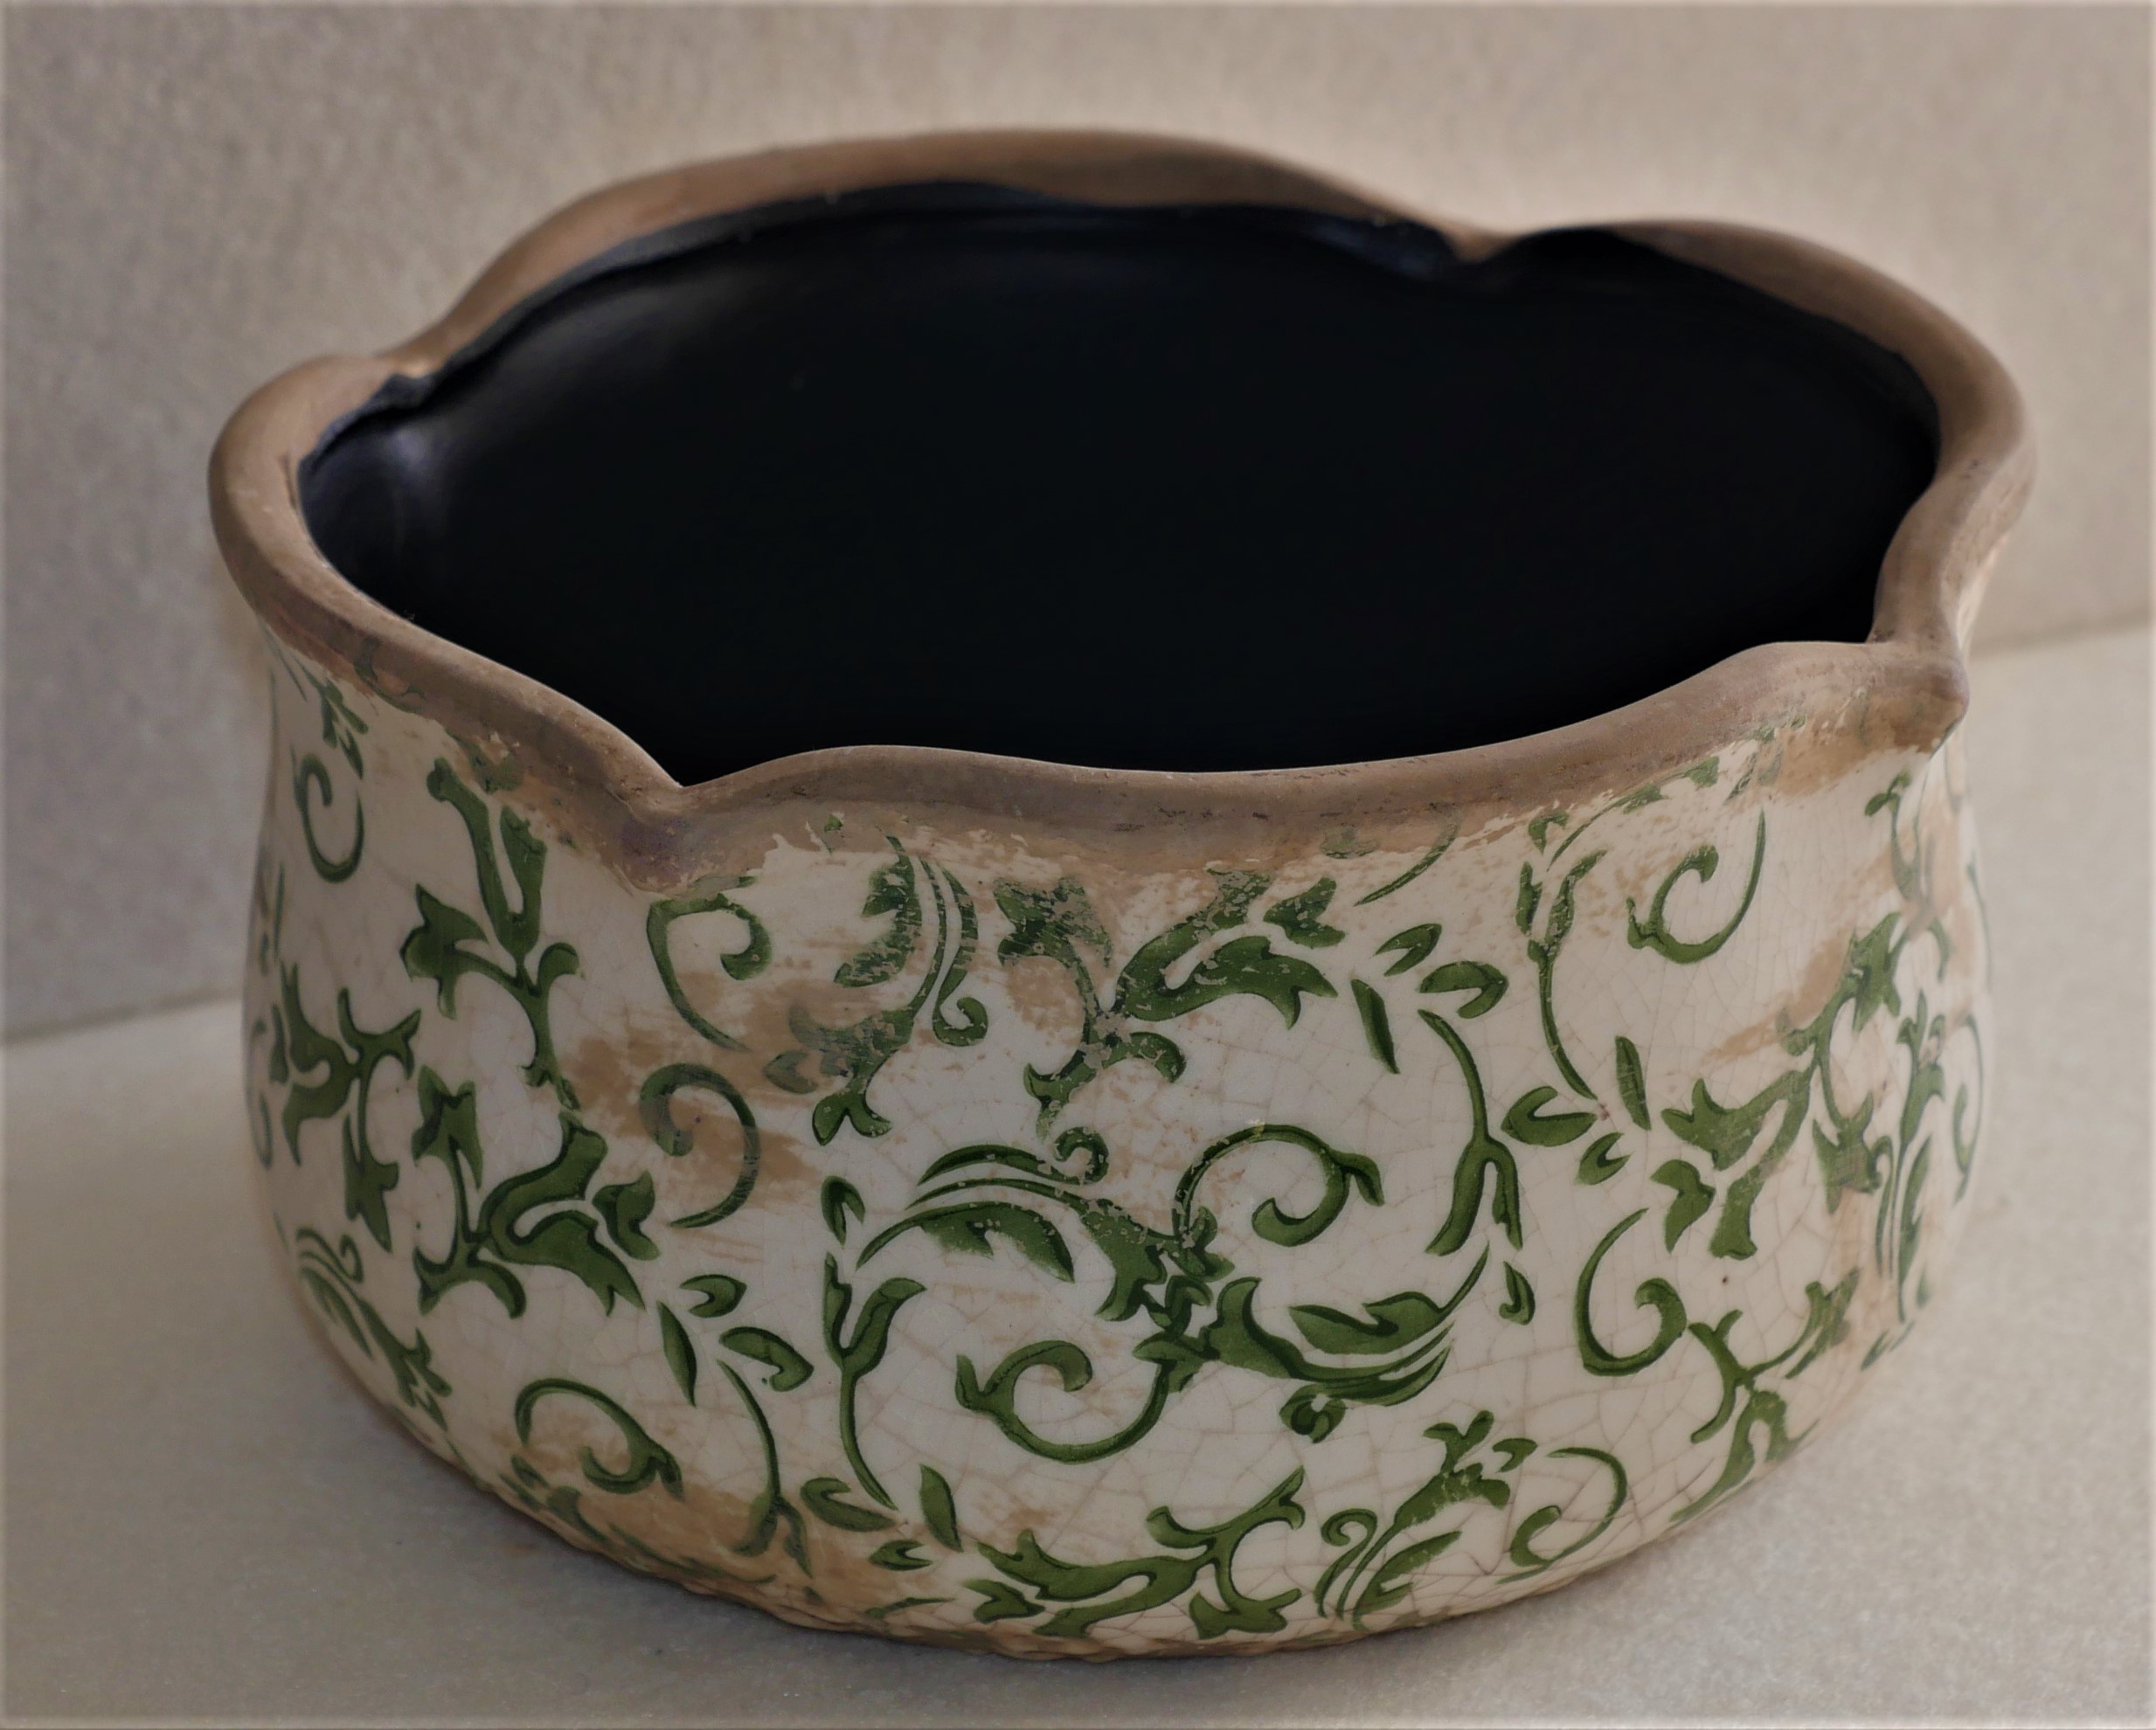 Pottery Green & White bowl for plant pot holder.